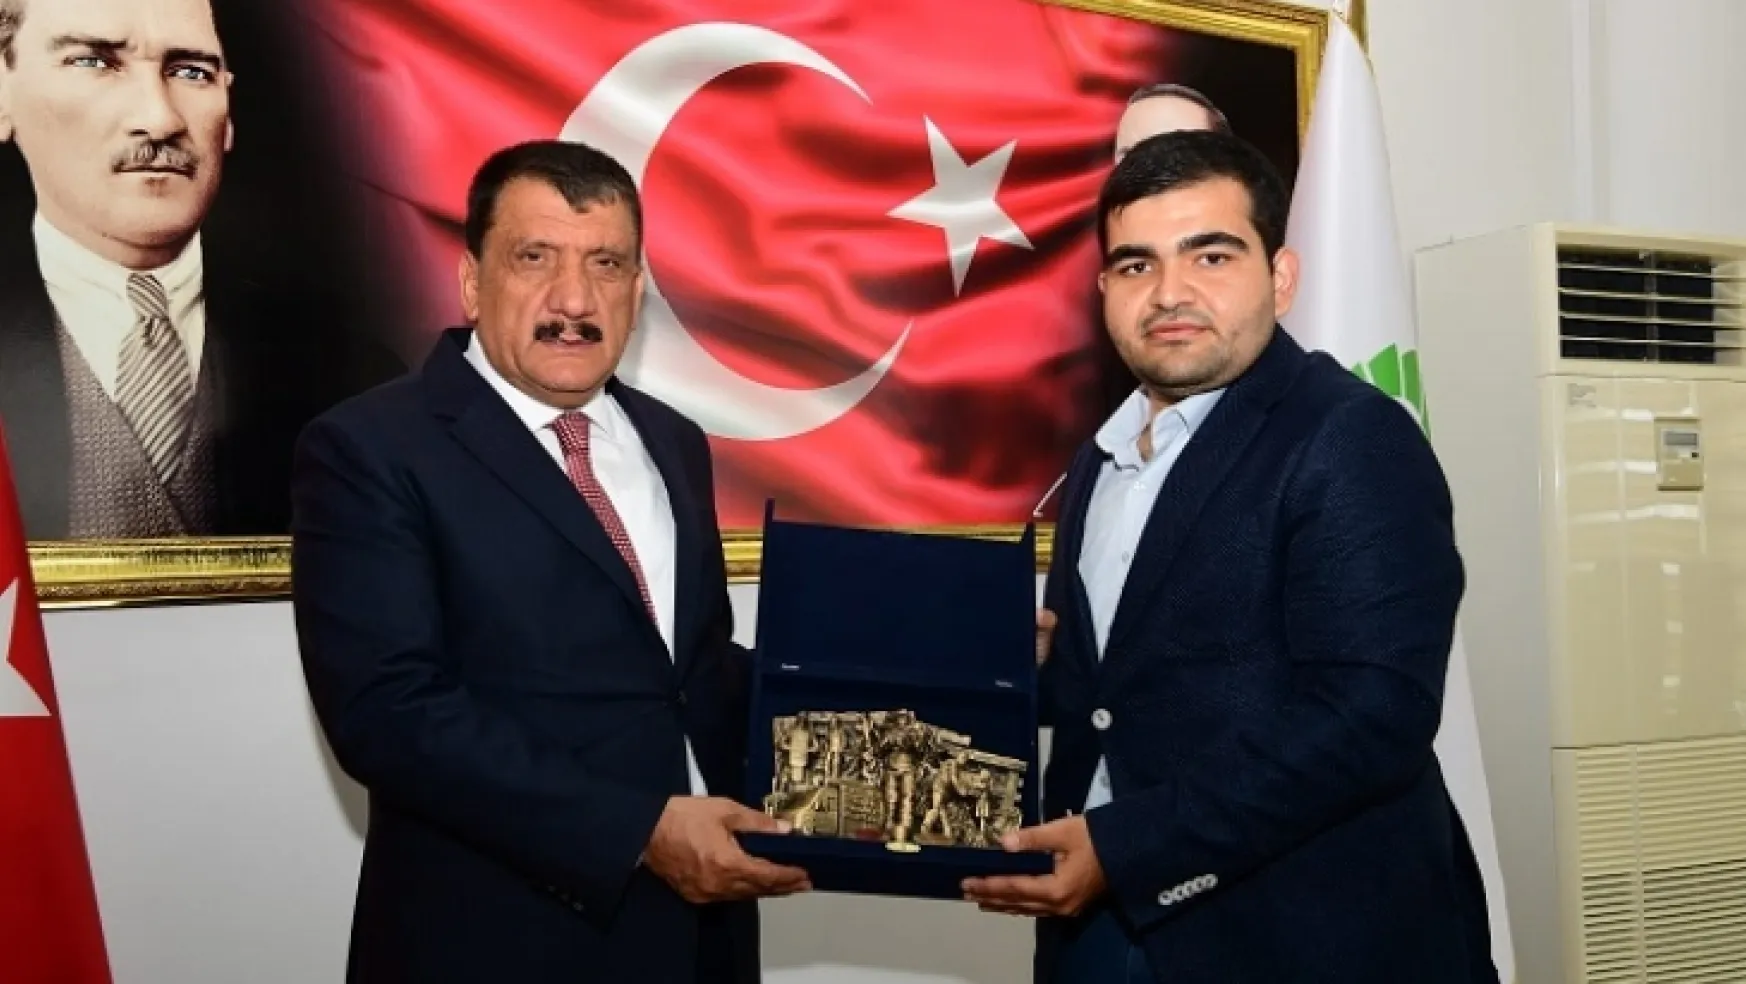 Kardeşe Vefa Derneği (Anda)'nden Başkan Gürkan'a Ziyaret